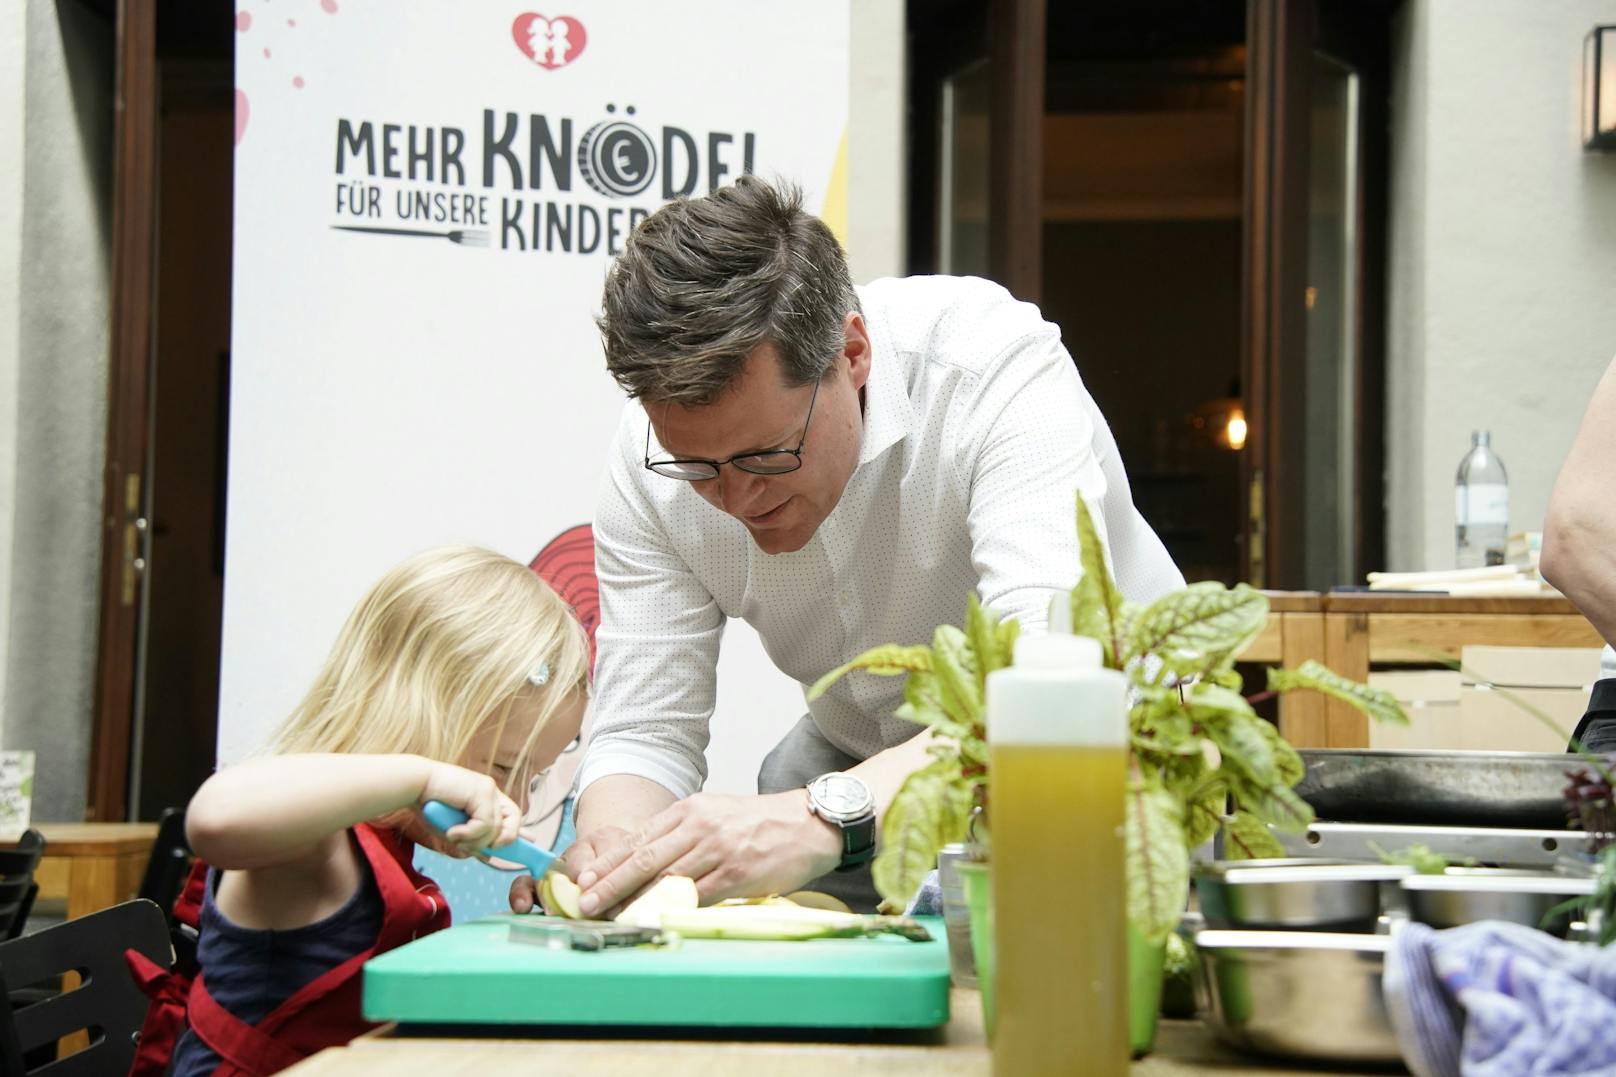 Zum Knödel kochen haben die Österreichischen Kinderfreunde eingeladen.